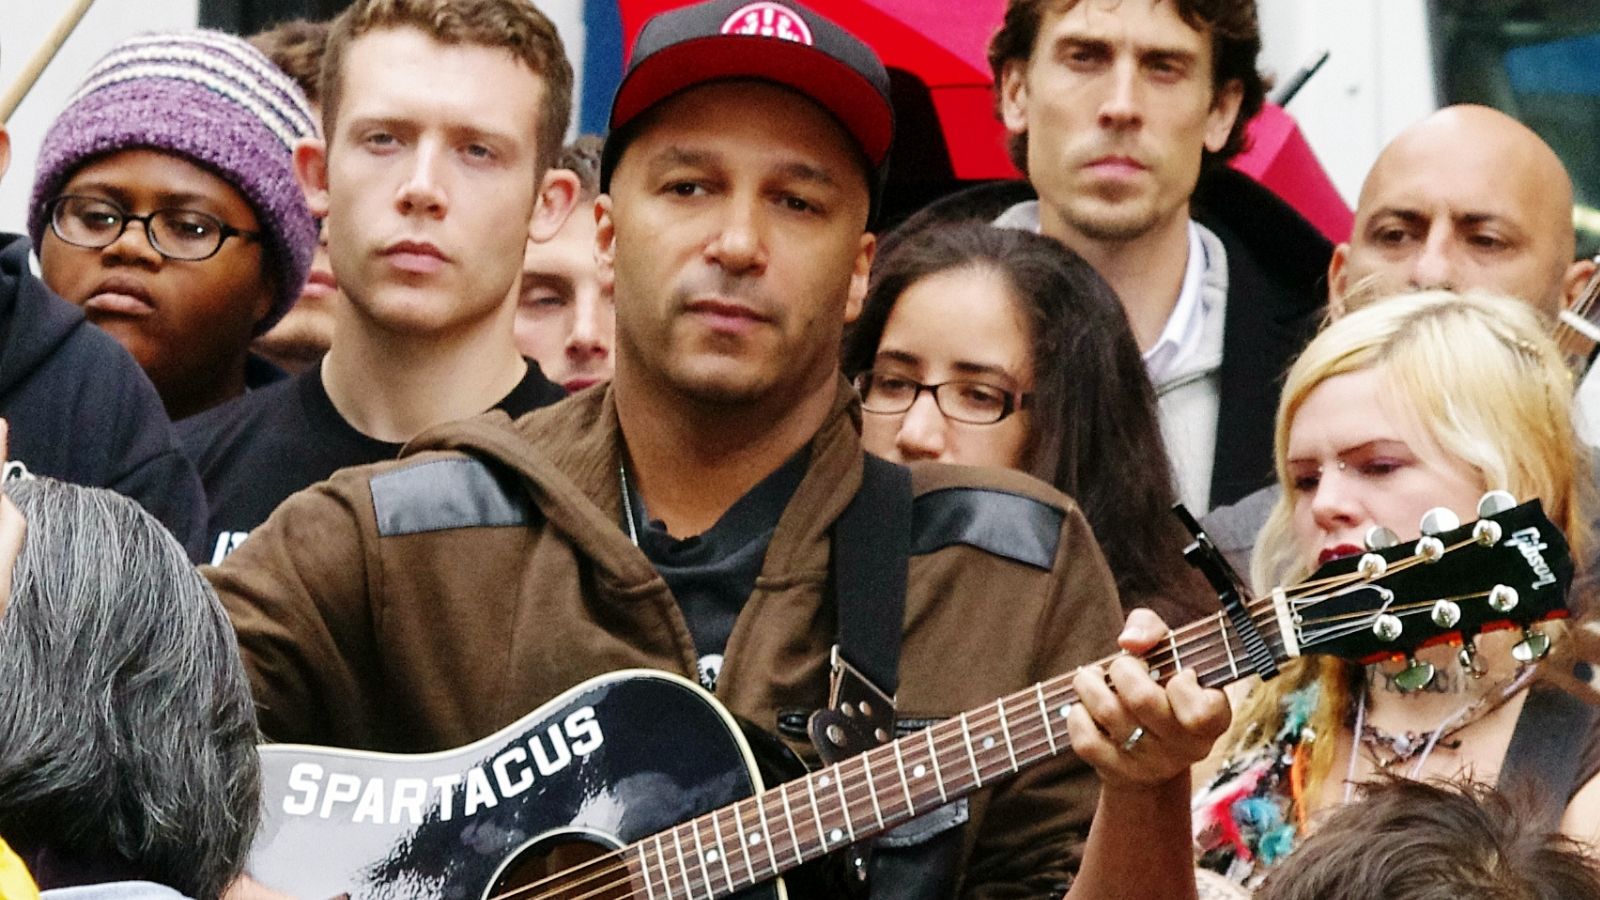 Il chitarrista Tom Morello in uno scatto di David Shankbone durante l'occupazione di Wall Street nel 2011